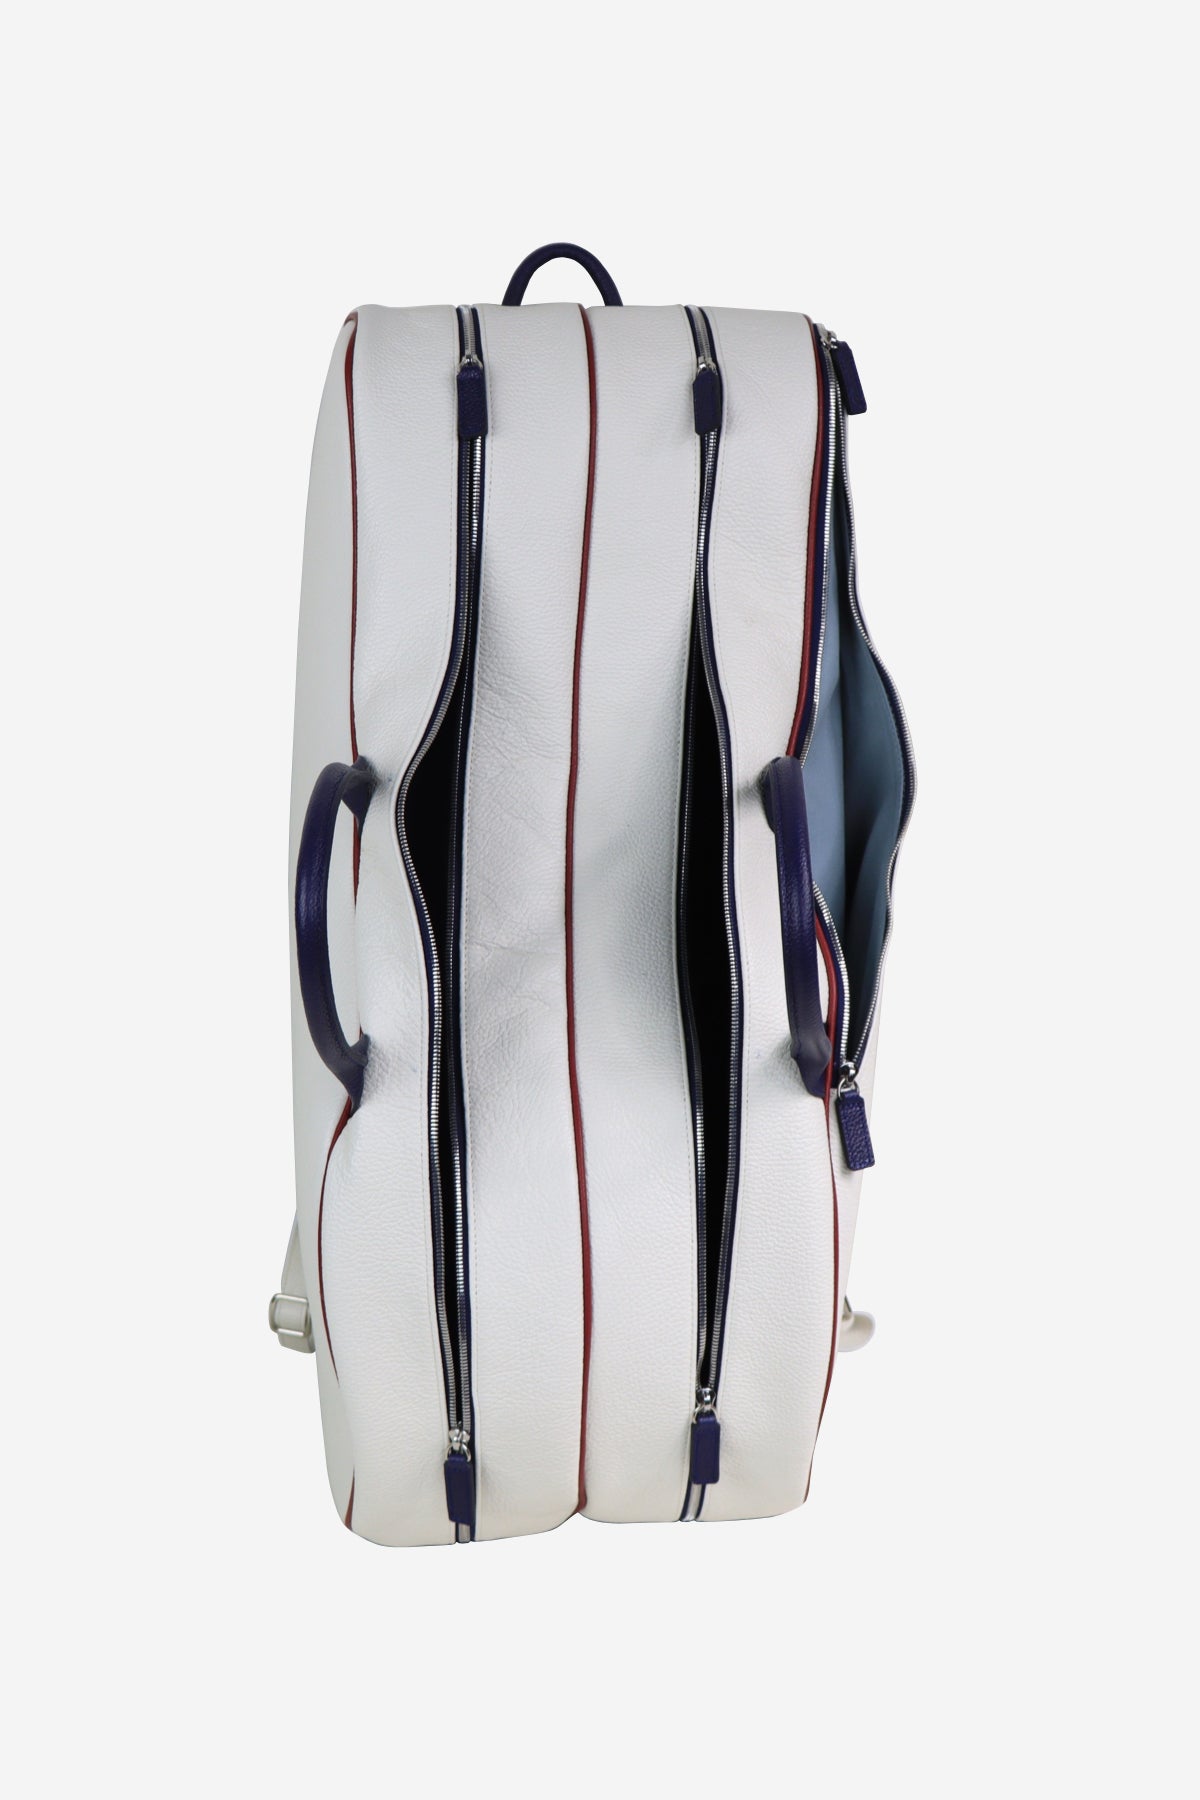 Classic Backpack Tennis Terrida su Artisia Store